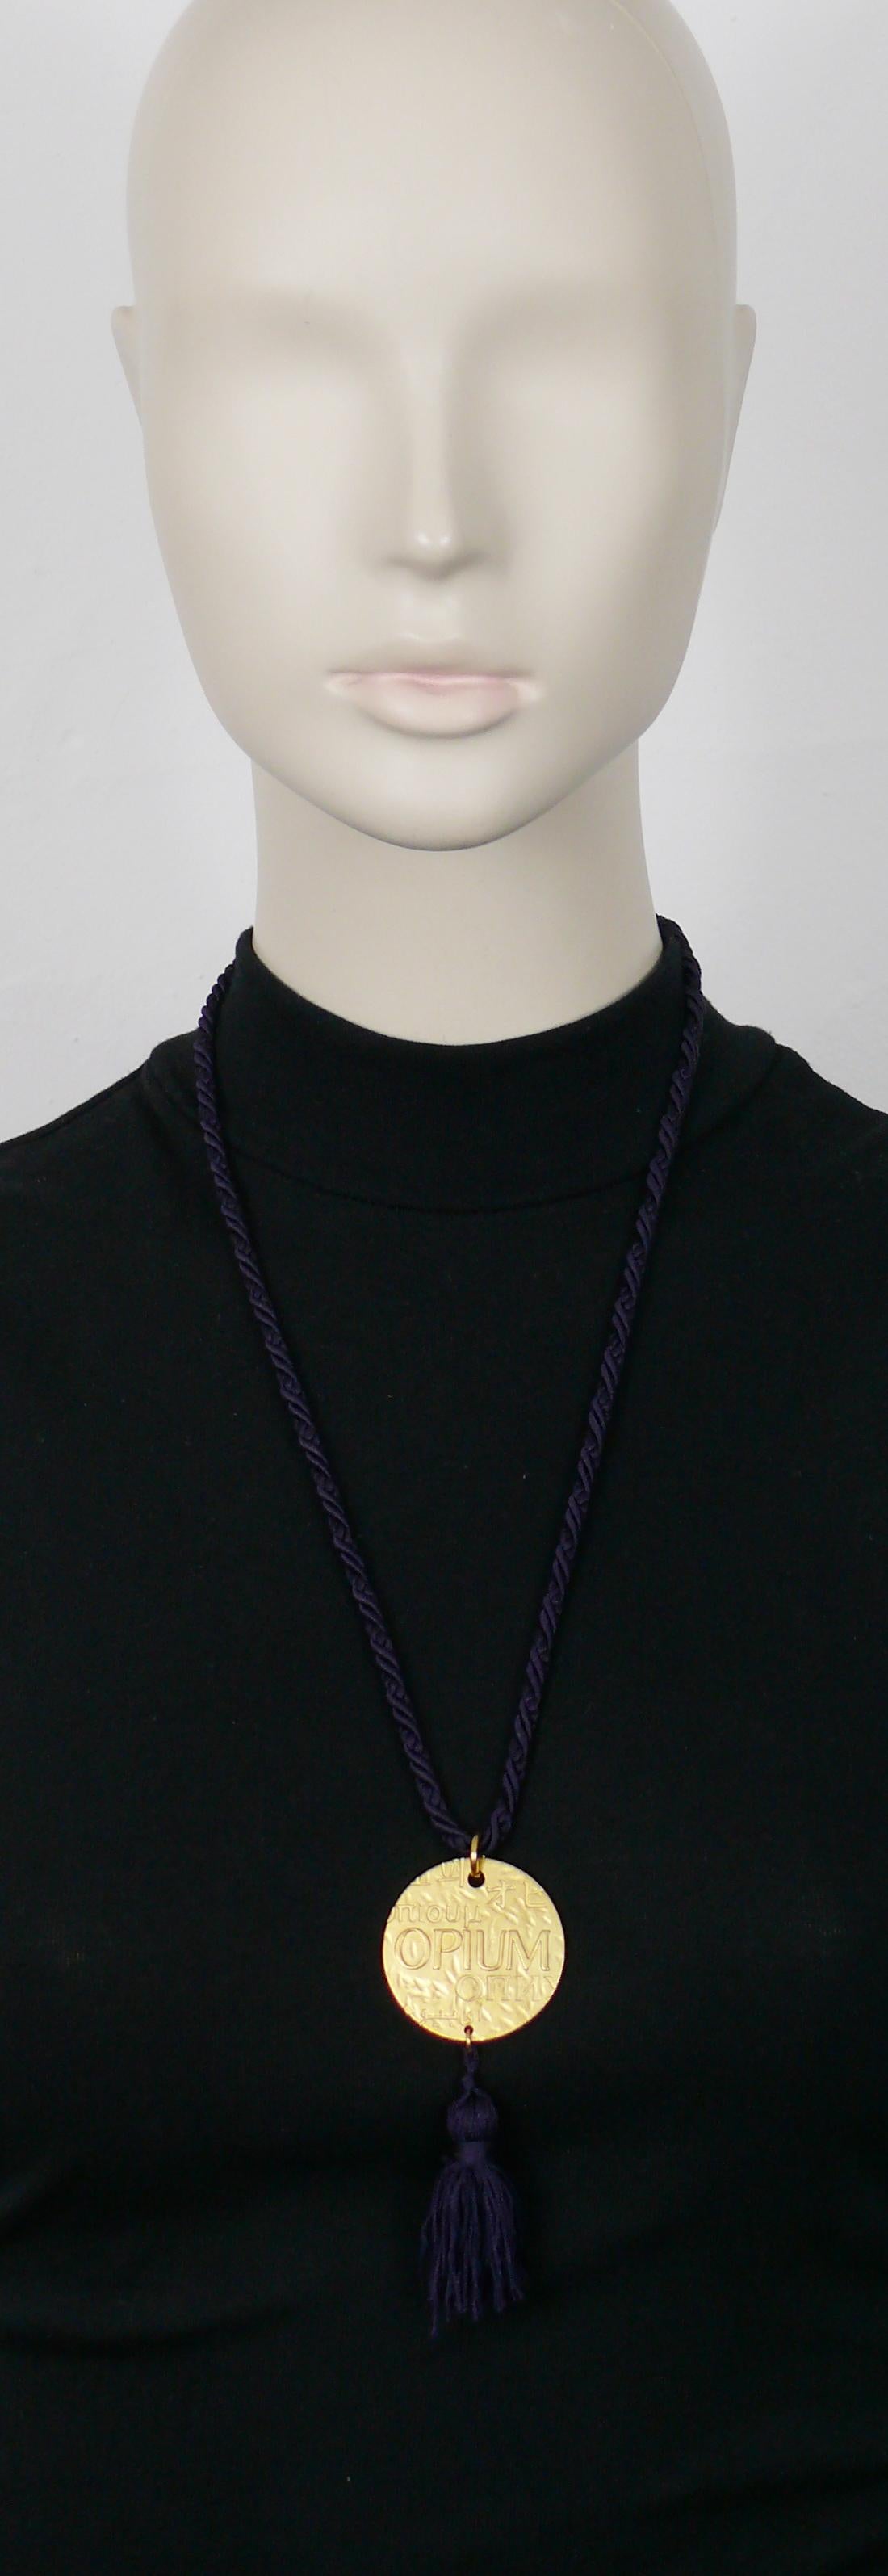 YVES SAINT LAURENT Vintage-Halskette mit Medaillon-Anhänger aus OPIUM. Lila Passepartout-Seil und Quaste.

Gekennzeichnet mit YSL Made in France.

Ungefähre Maße: getragene Länge (einschließlich Quaste) ca. 37,5 cm / Durchmesser des Anhängers ca.